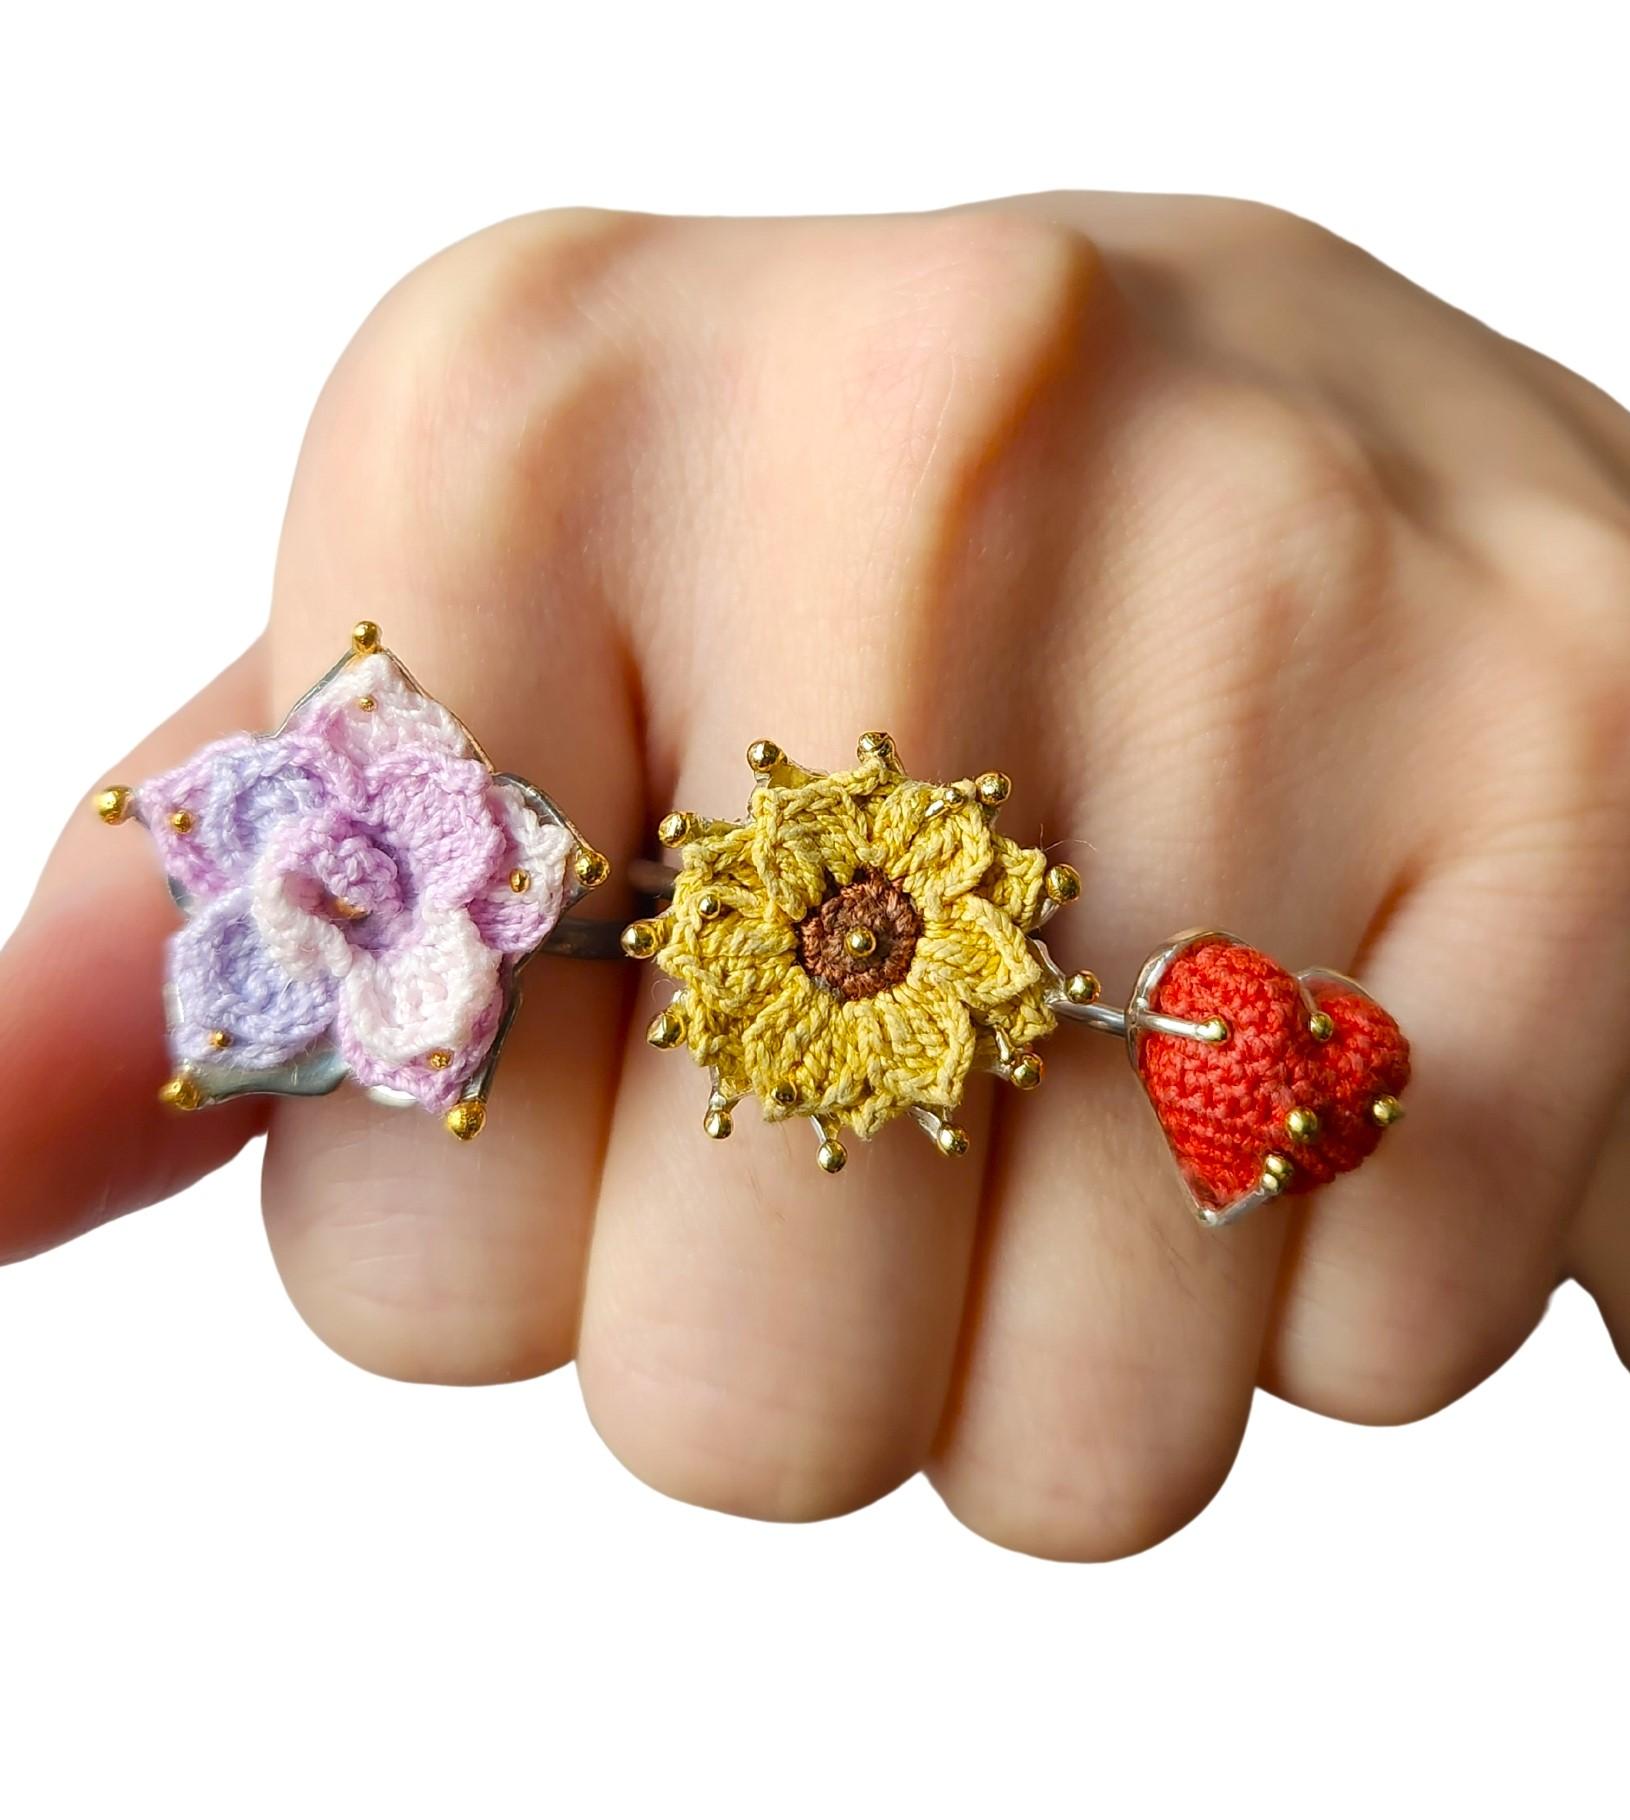 Nur Alison Nagasue würde sich dafür interessieren, kleine handgefertigte Strickblumen zu kombinieren und in eine handgefertigte Silber- und 14-karätige Goldperlen-